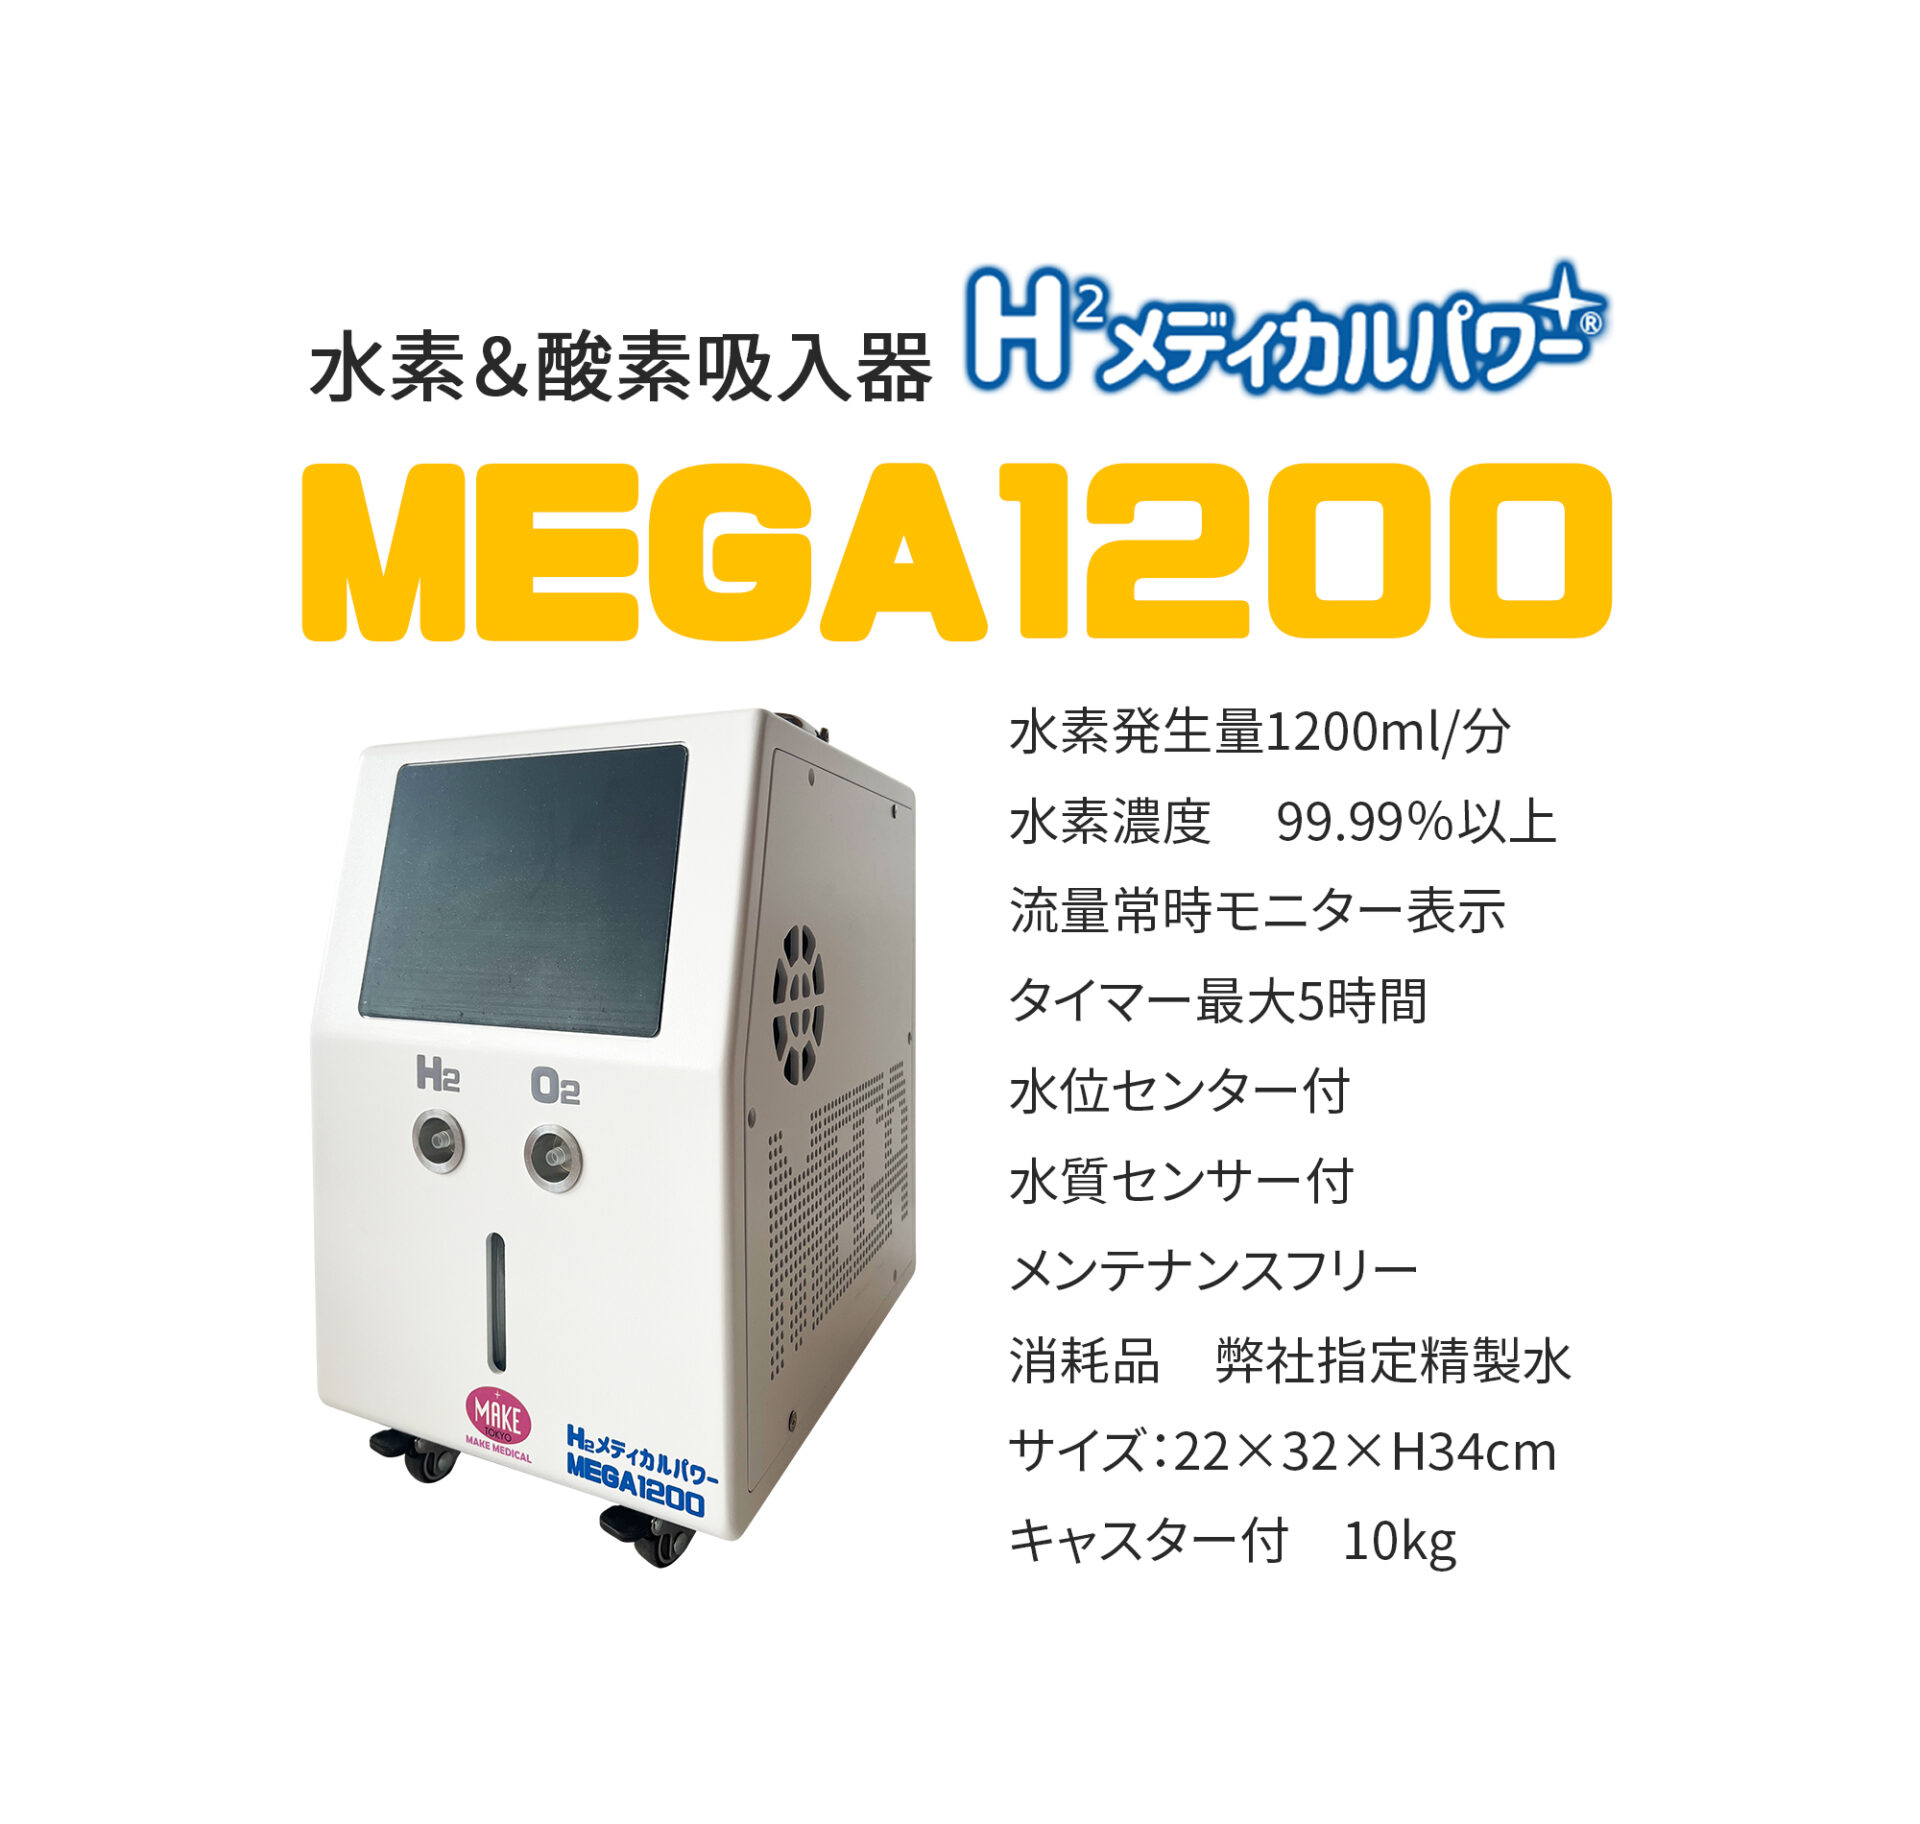 MEGA1200